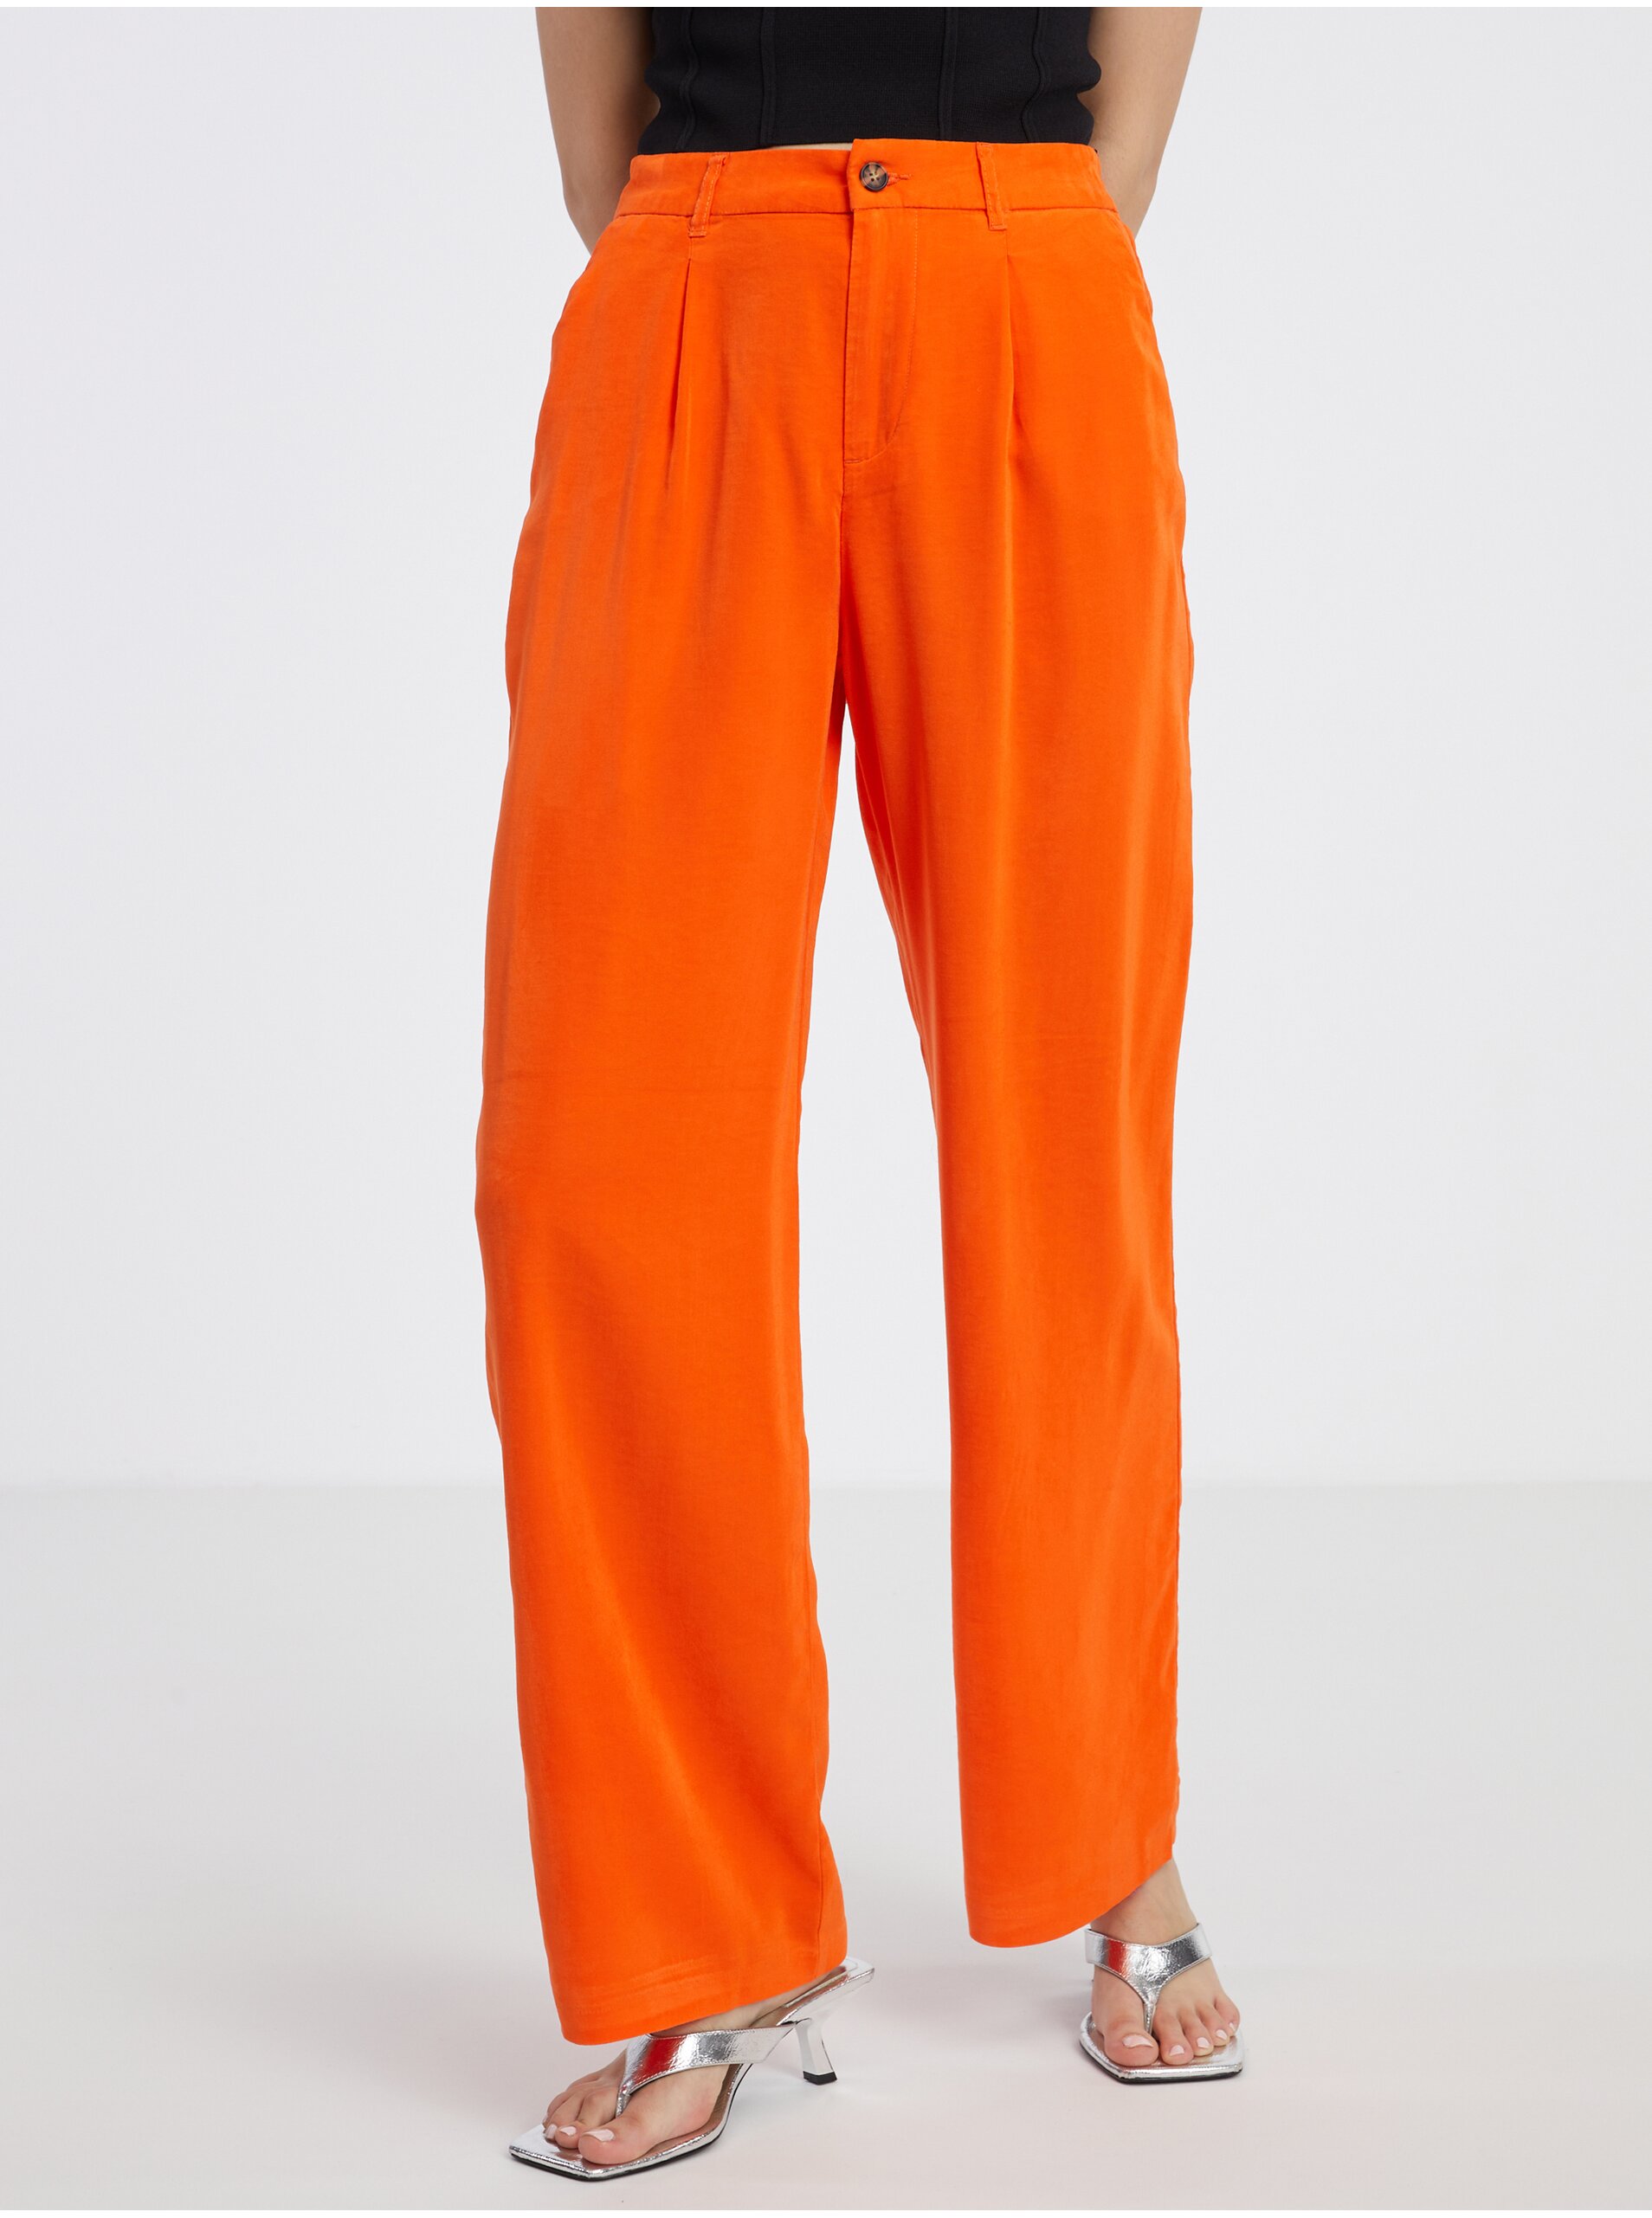 Lacno Oranžové dámske nohavice ONLY Aris